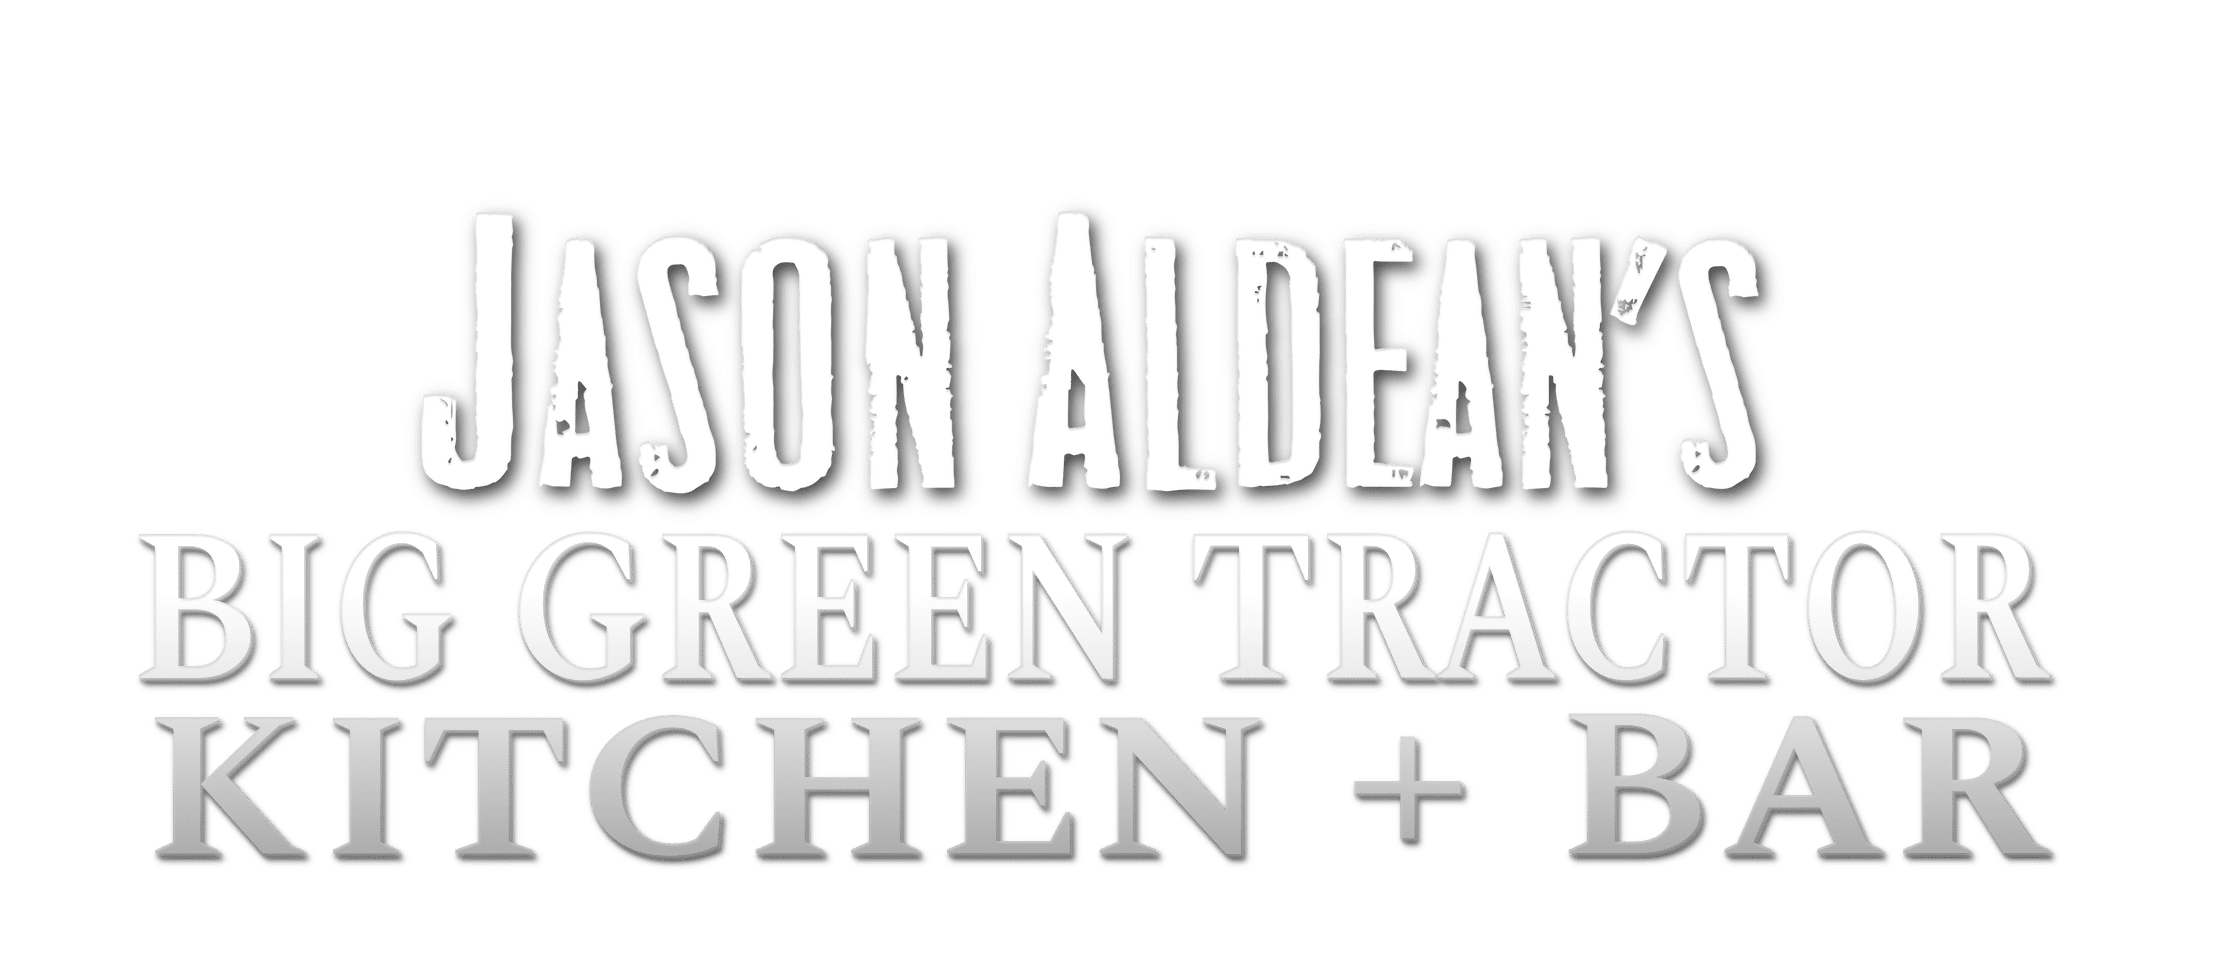 Jason Aldean Kitchen-Bar